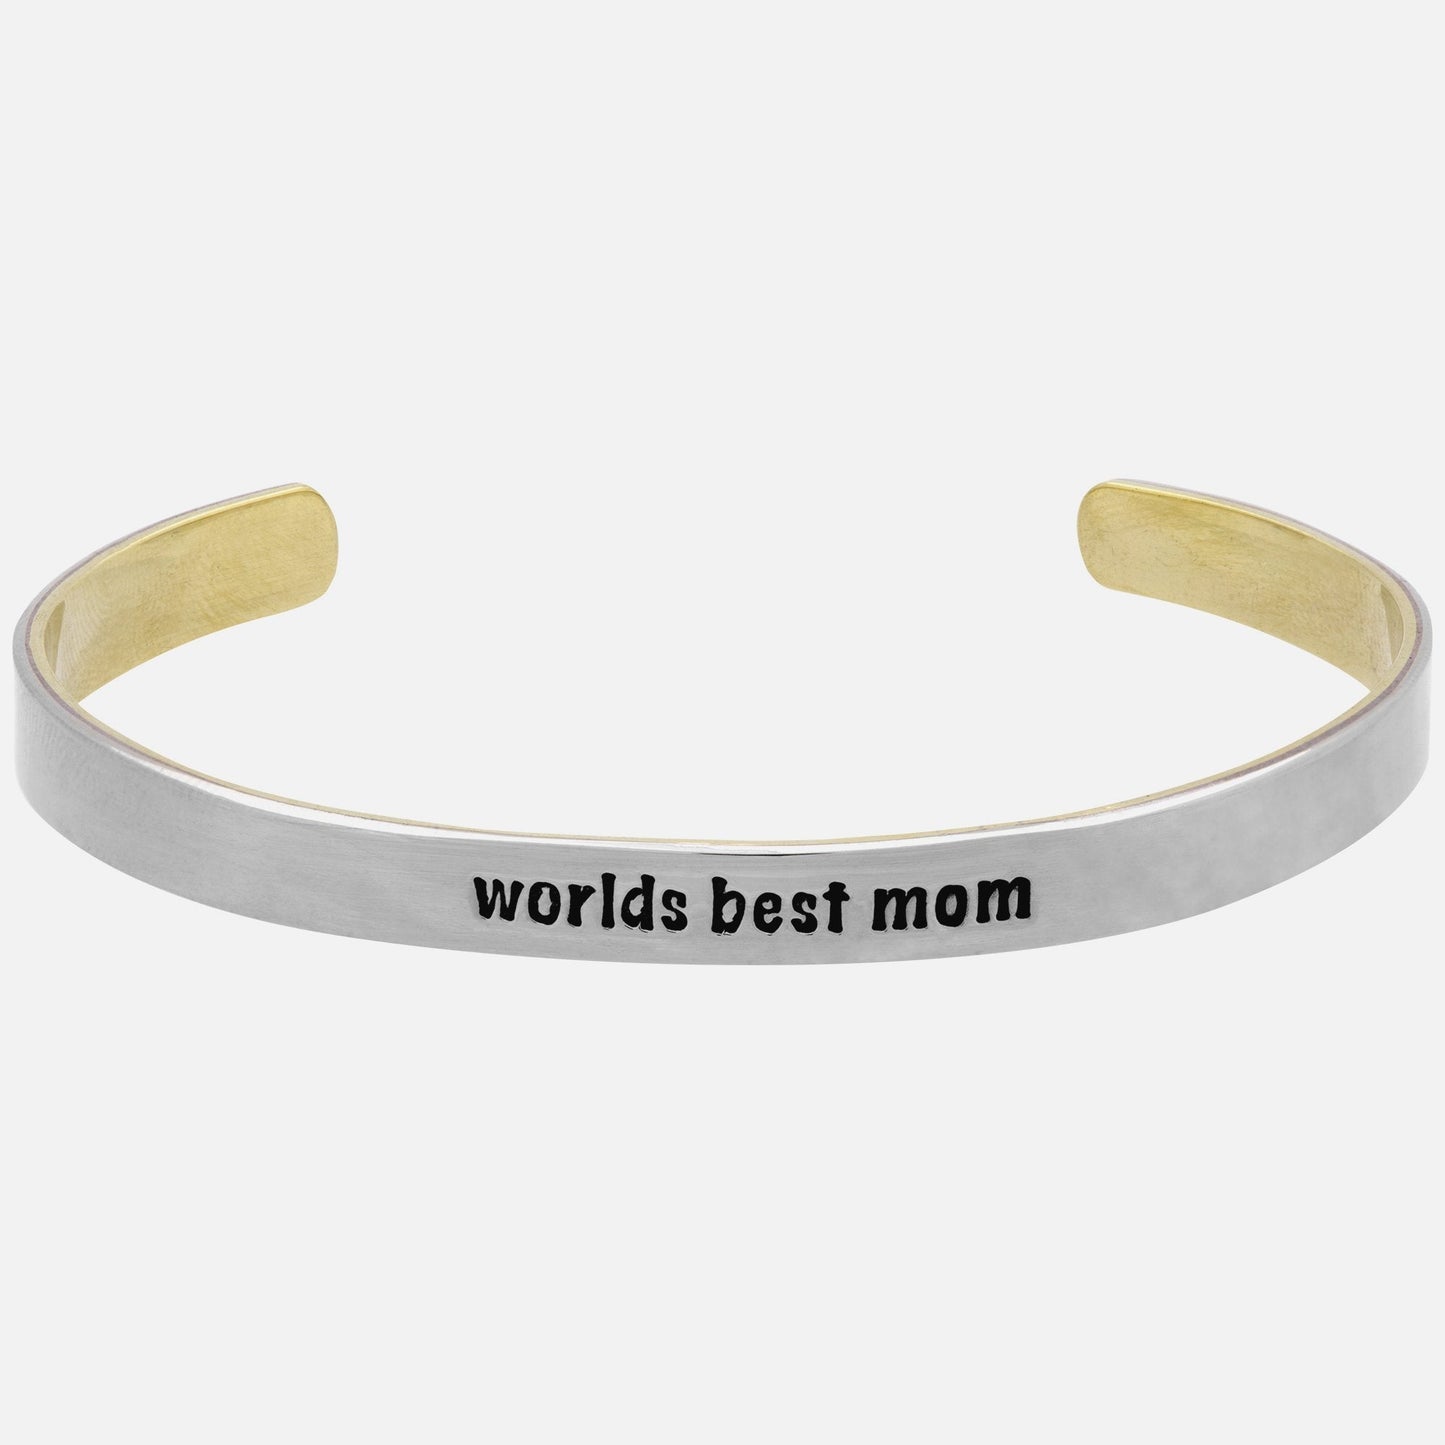 Worlds Best Mom Mixed Metals Cuff Bracelet